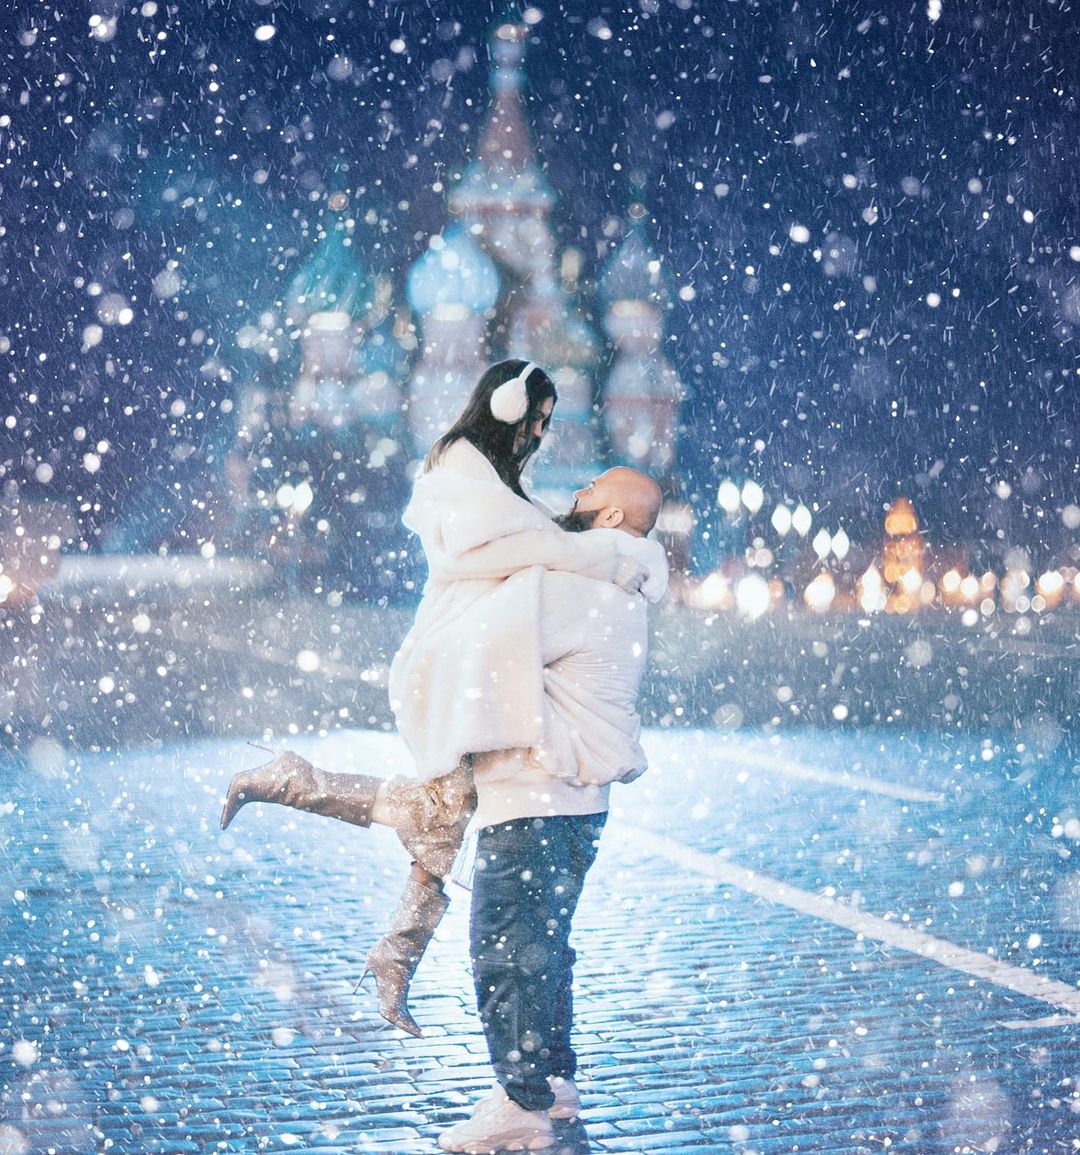 Оксана Самойлова и Джиган устроили романтичную фотосессию в Москве